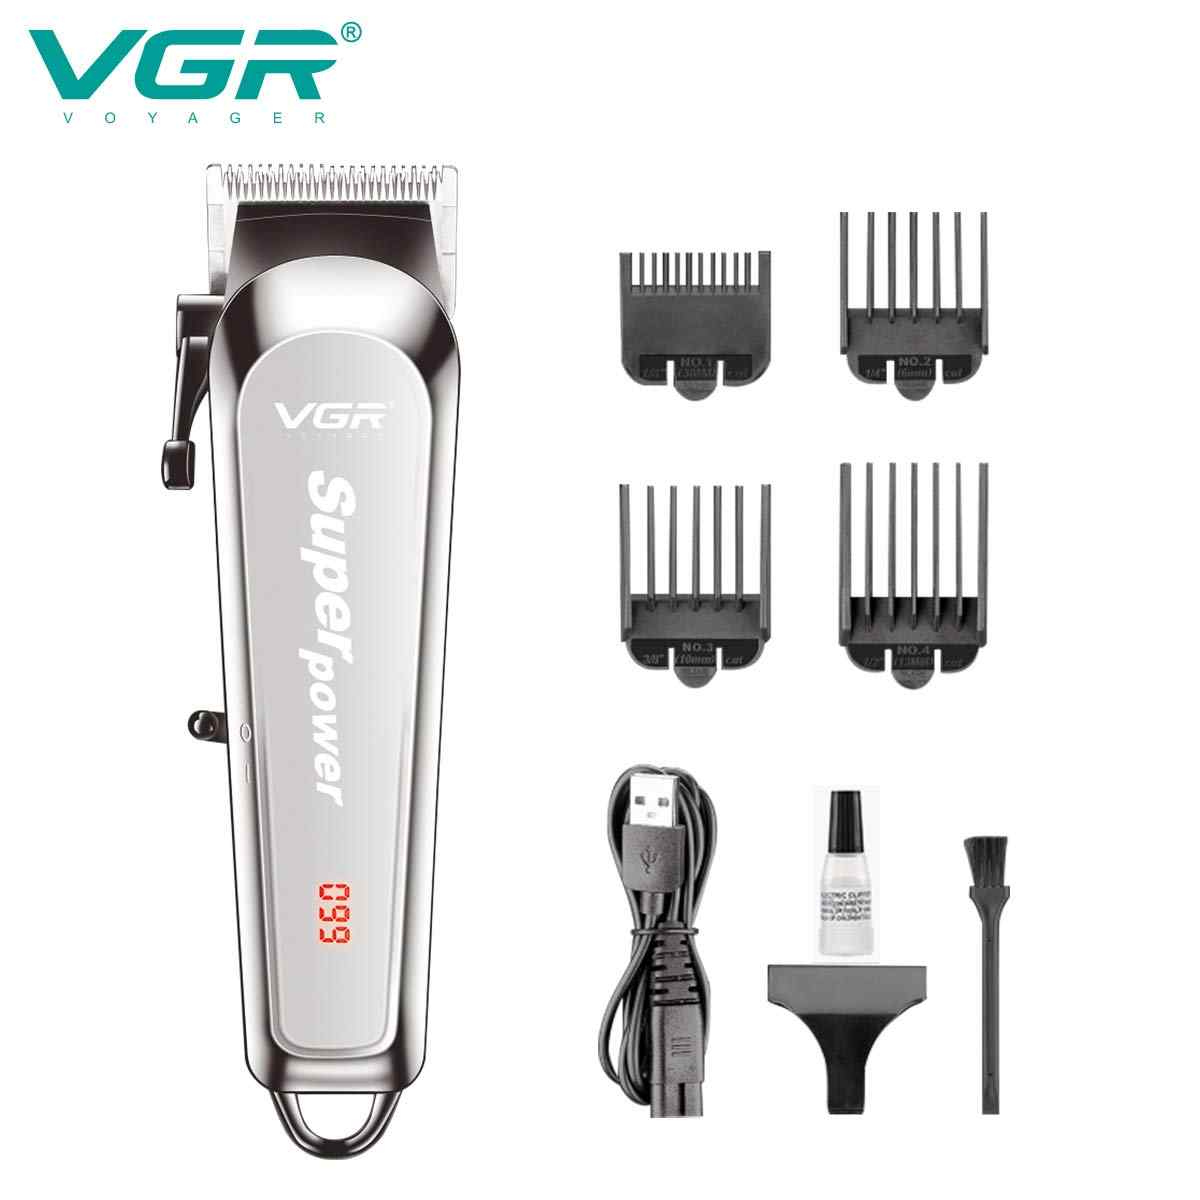 ماكنة حلاقة VGR V-060